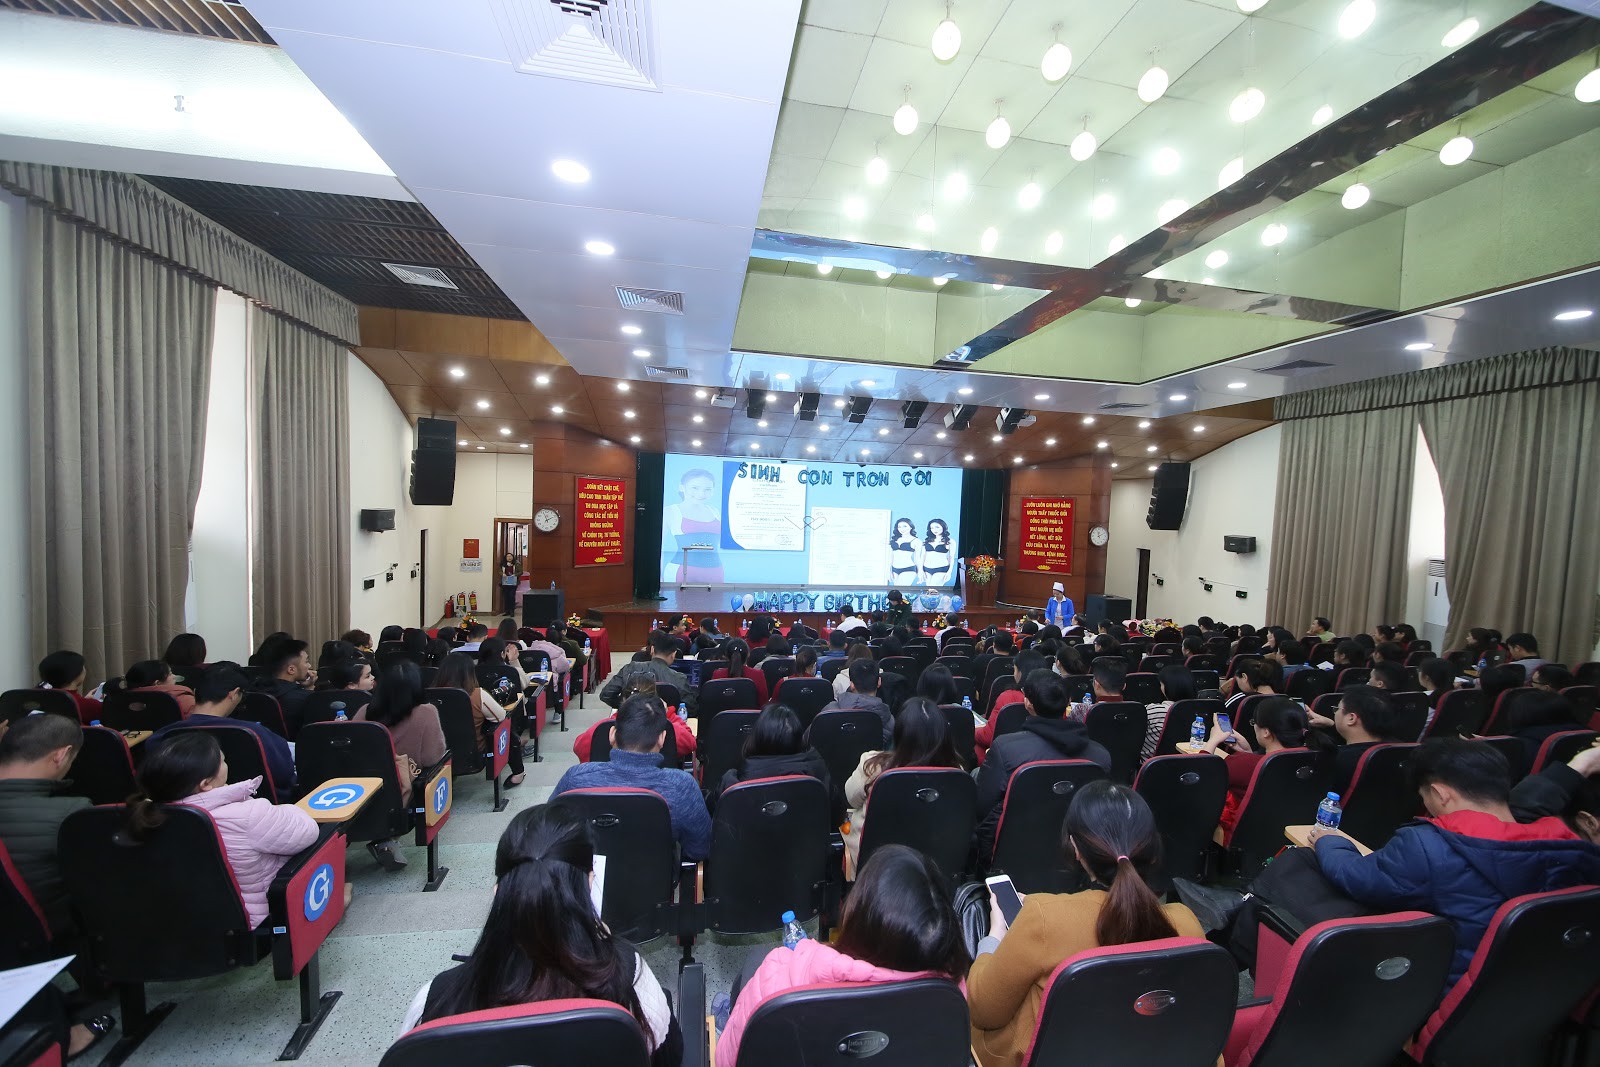 Latex giảm eo made in Việt Nam được giới thiệu hoành tráng tại hội nghị Bệnh viện TƯQĐ 108 - Ảnh 6.